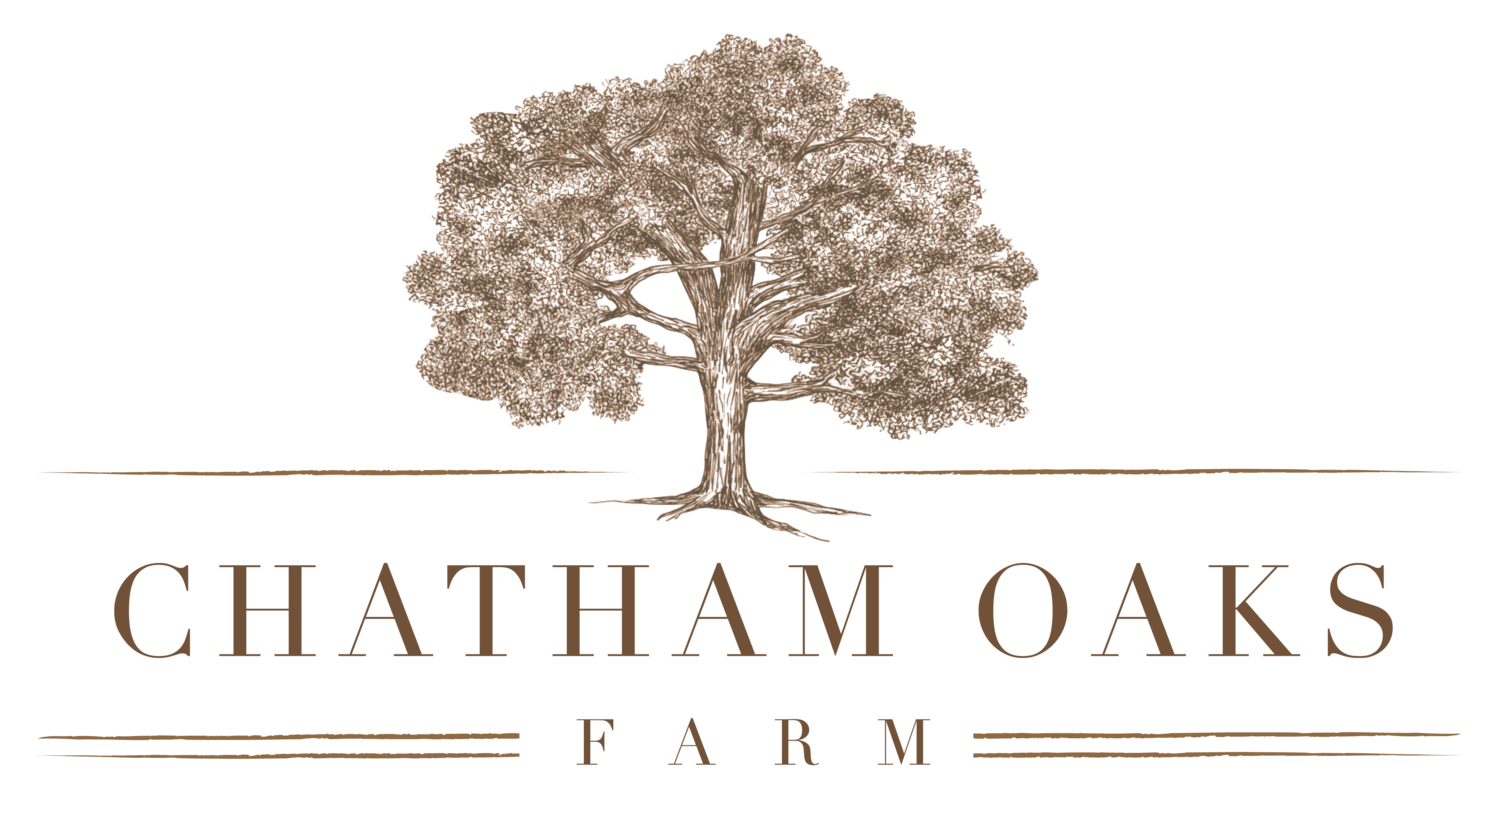 Chatham Oaks Farm